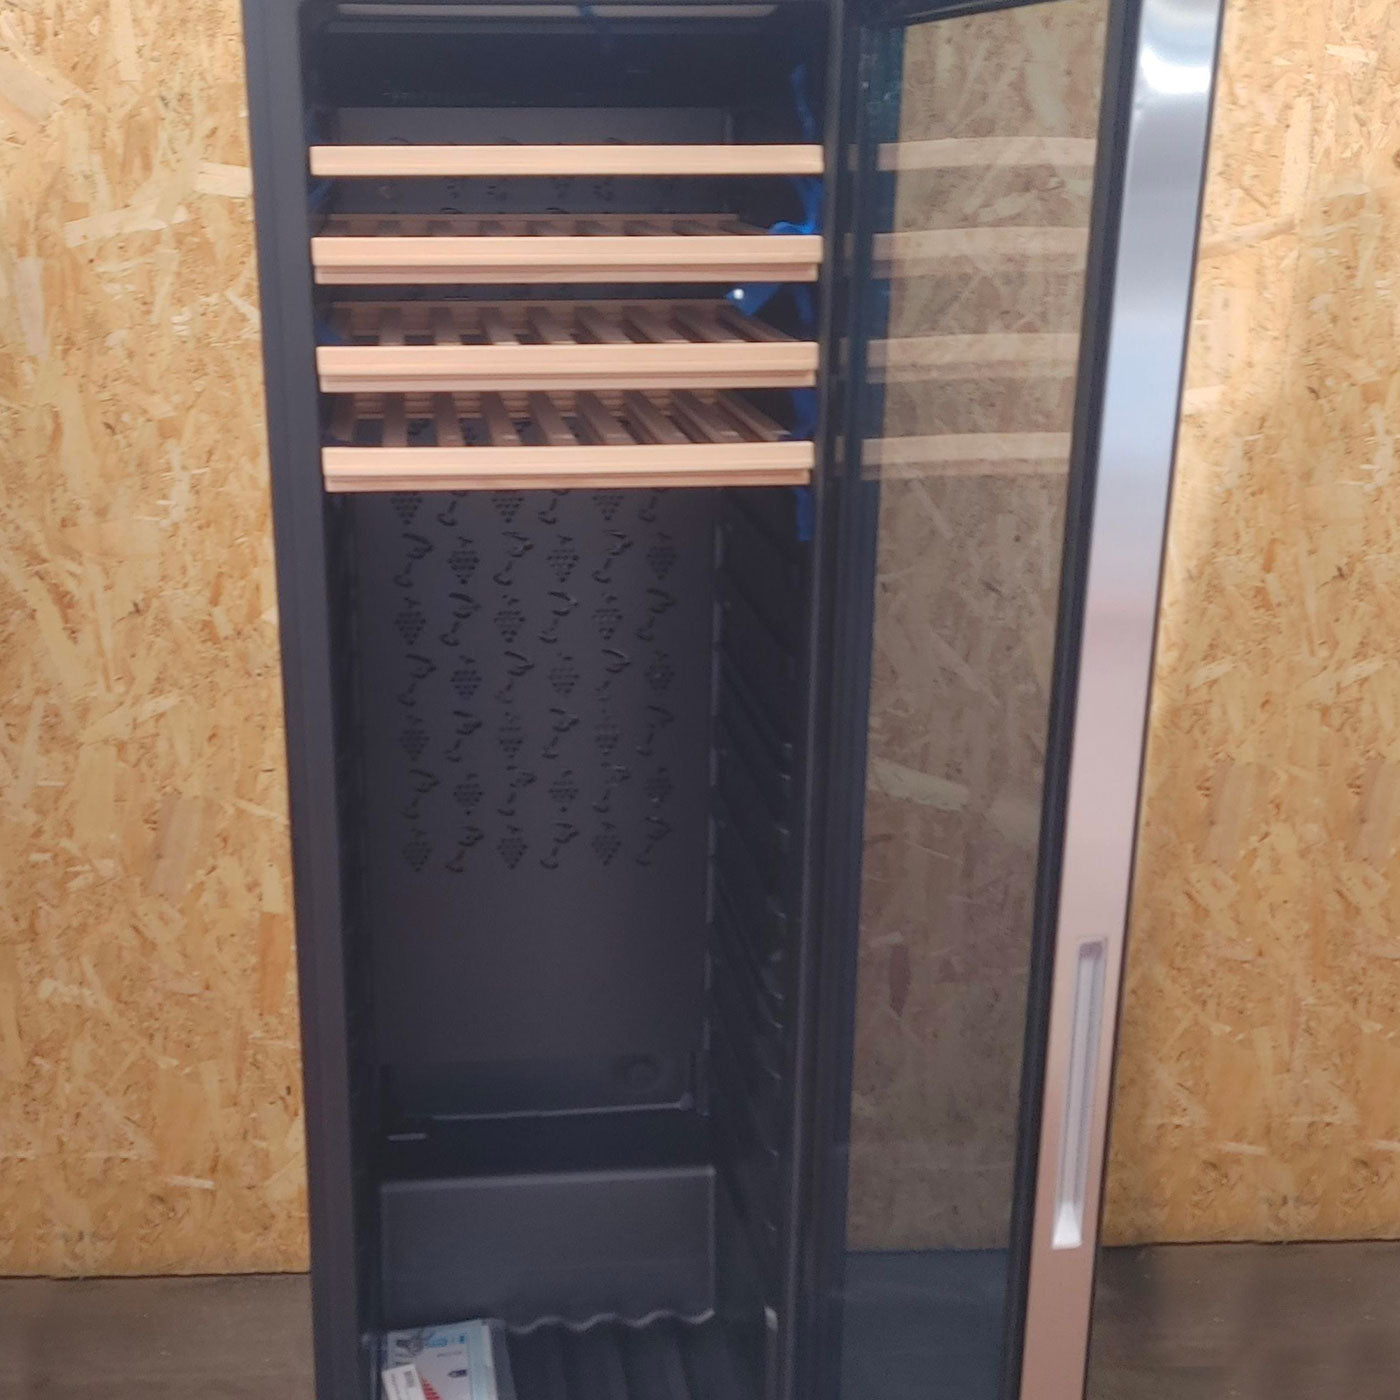 Haier Wine Bank 60 Serie 3 WS171GA Cantinetta frigo con compressore Libera installazione Nero 166 bottiglia(e)21 bottiglia(e)